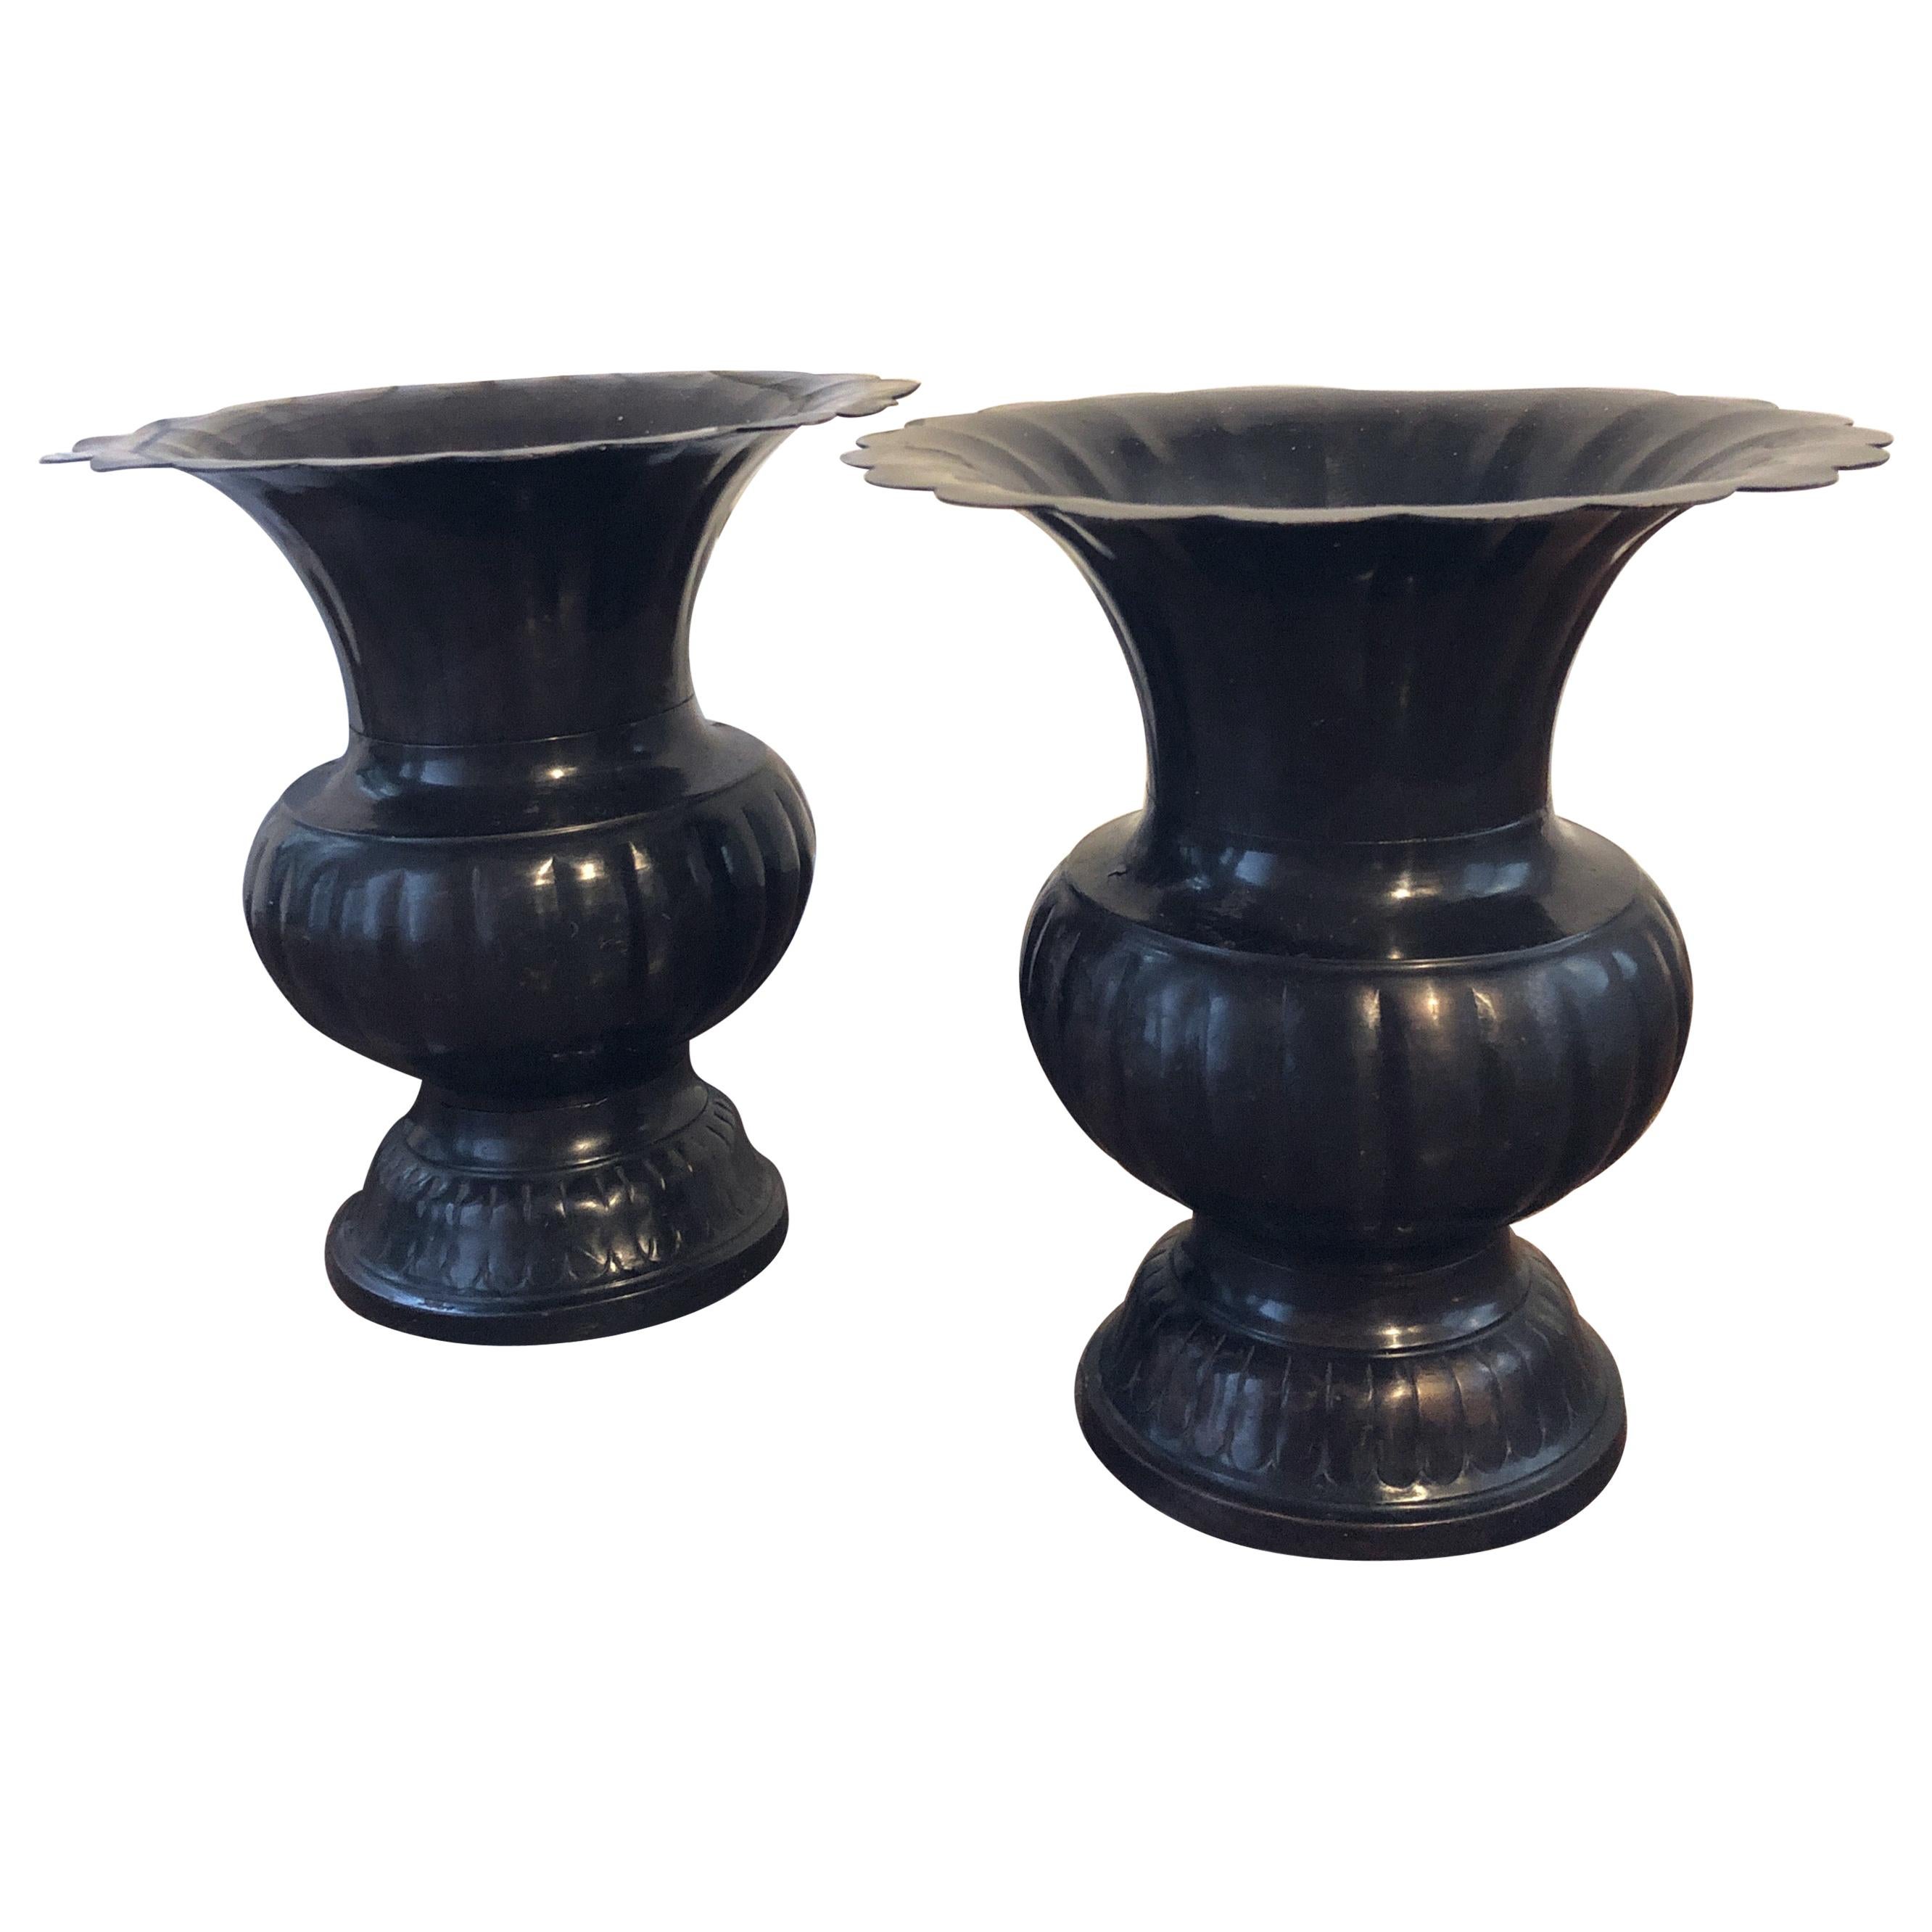 Coppia di vasi/vaschette Gu cinesi in bronzo della fine del XIX-inizio XX secolo